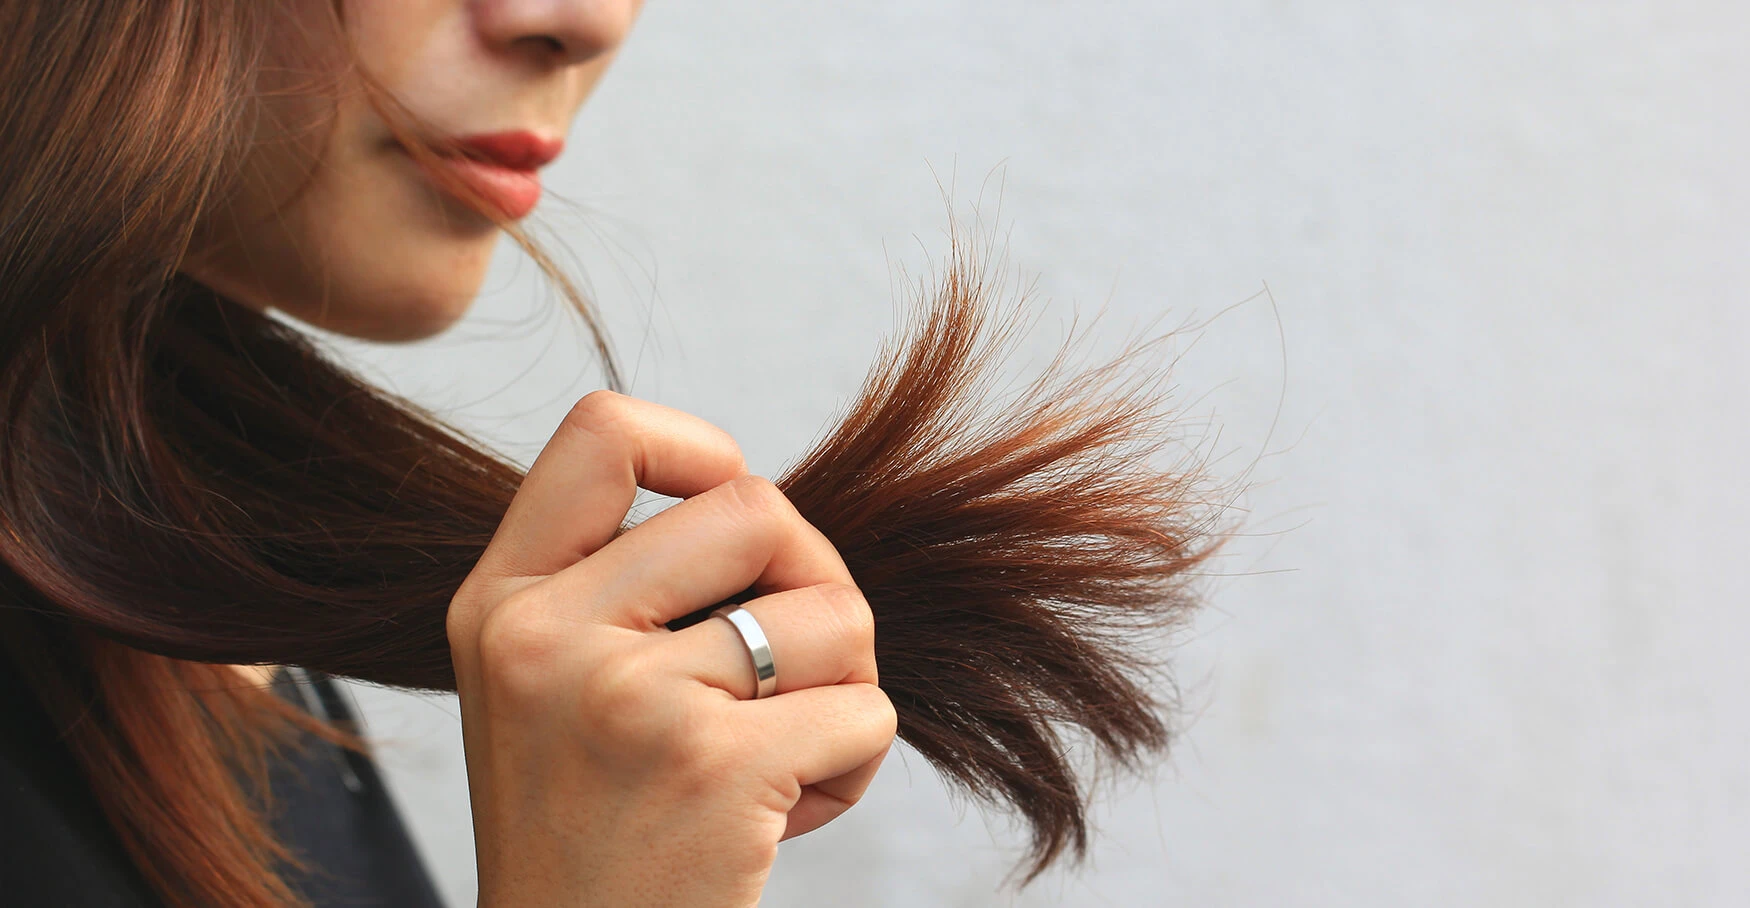 Как вернуть натуральный цвет волос